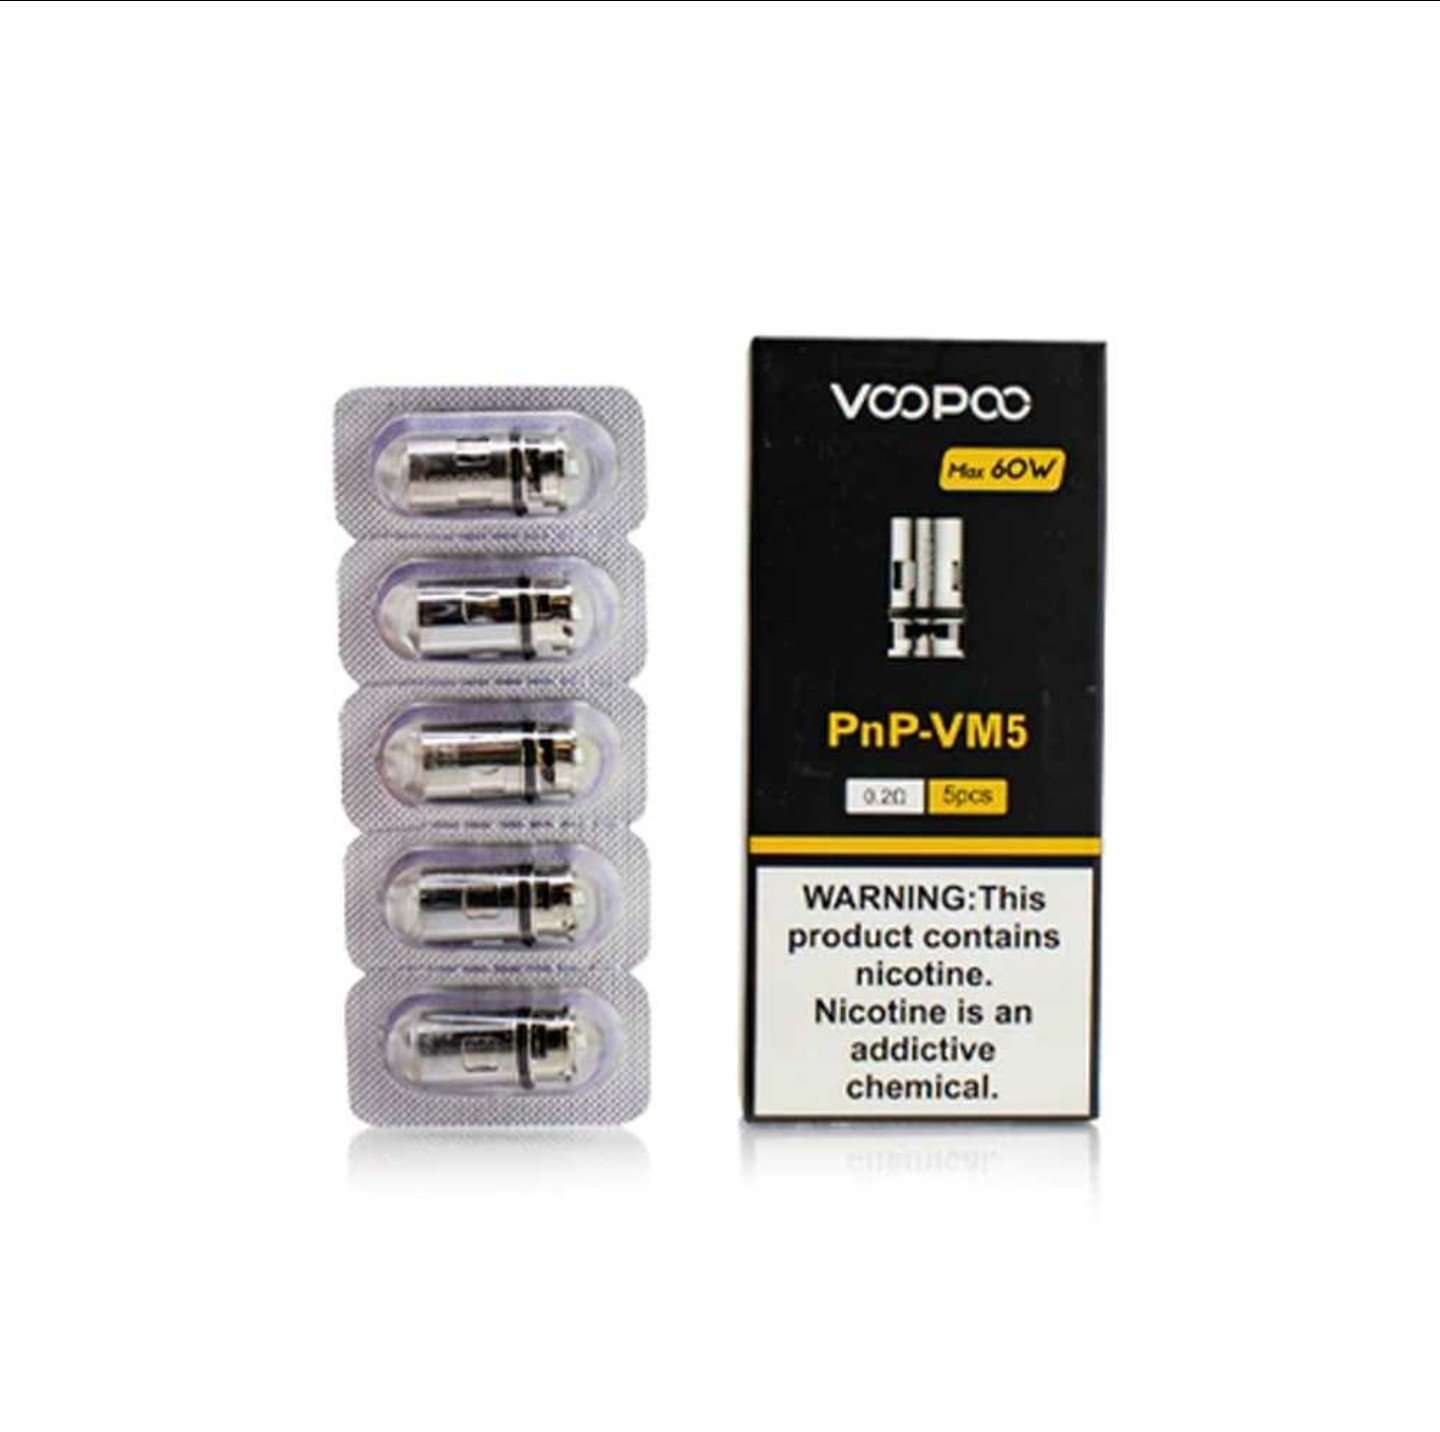 VOOPOO PnP-VM5 Coil 0.2ohm 5PCS